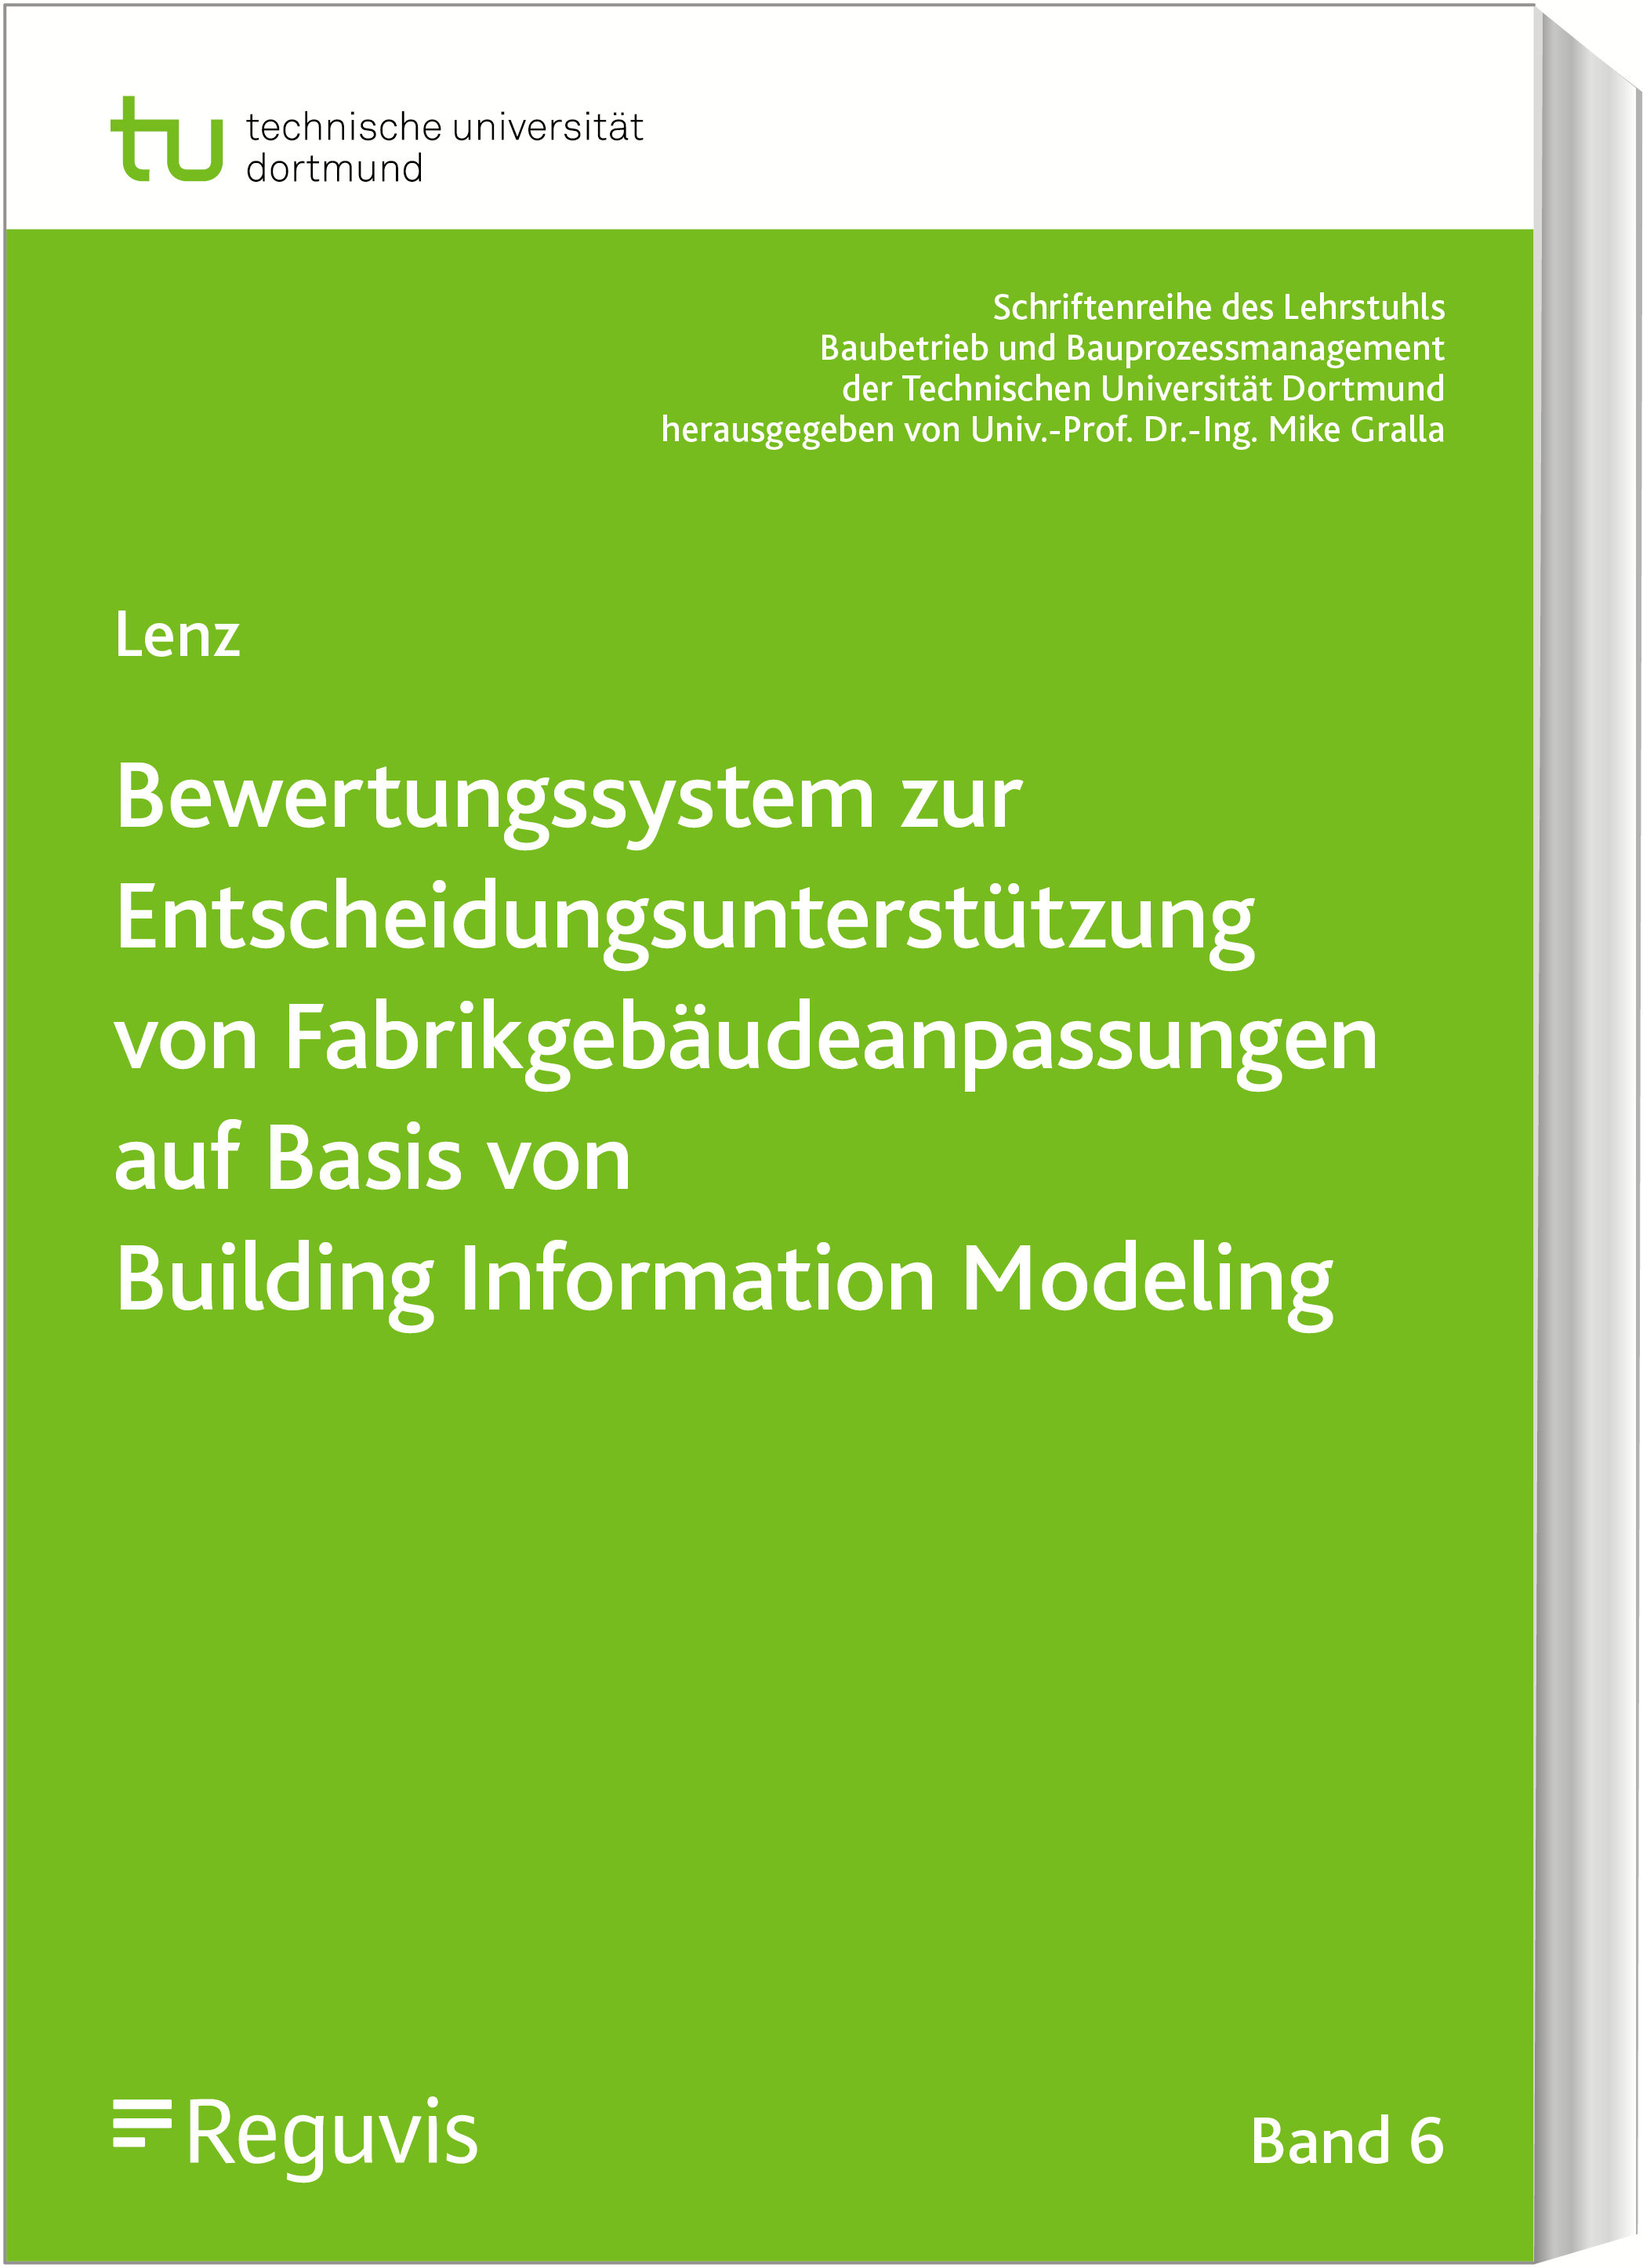 Bewertungssystem zur Entscheidungsunterstützung von Fabrikgebäudeanpassungen auf Basis von Building Information Modeling